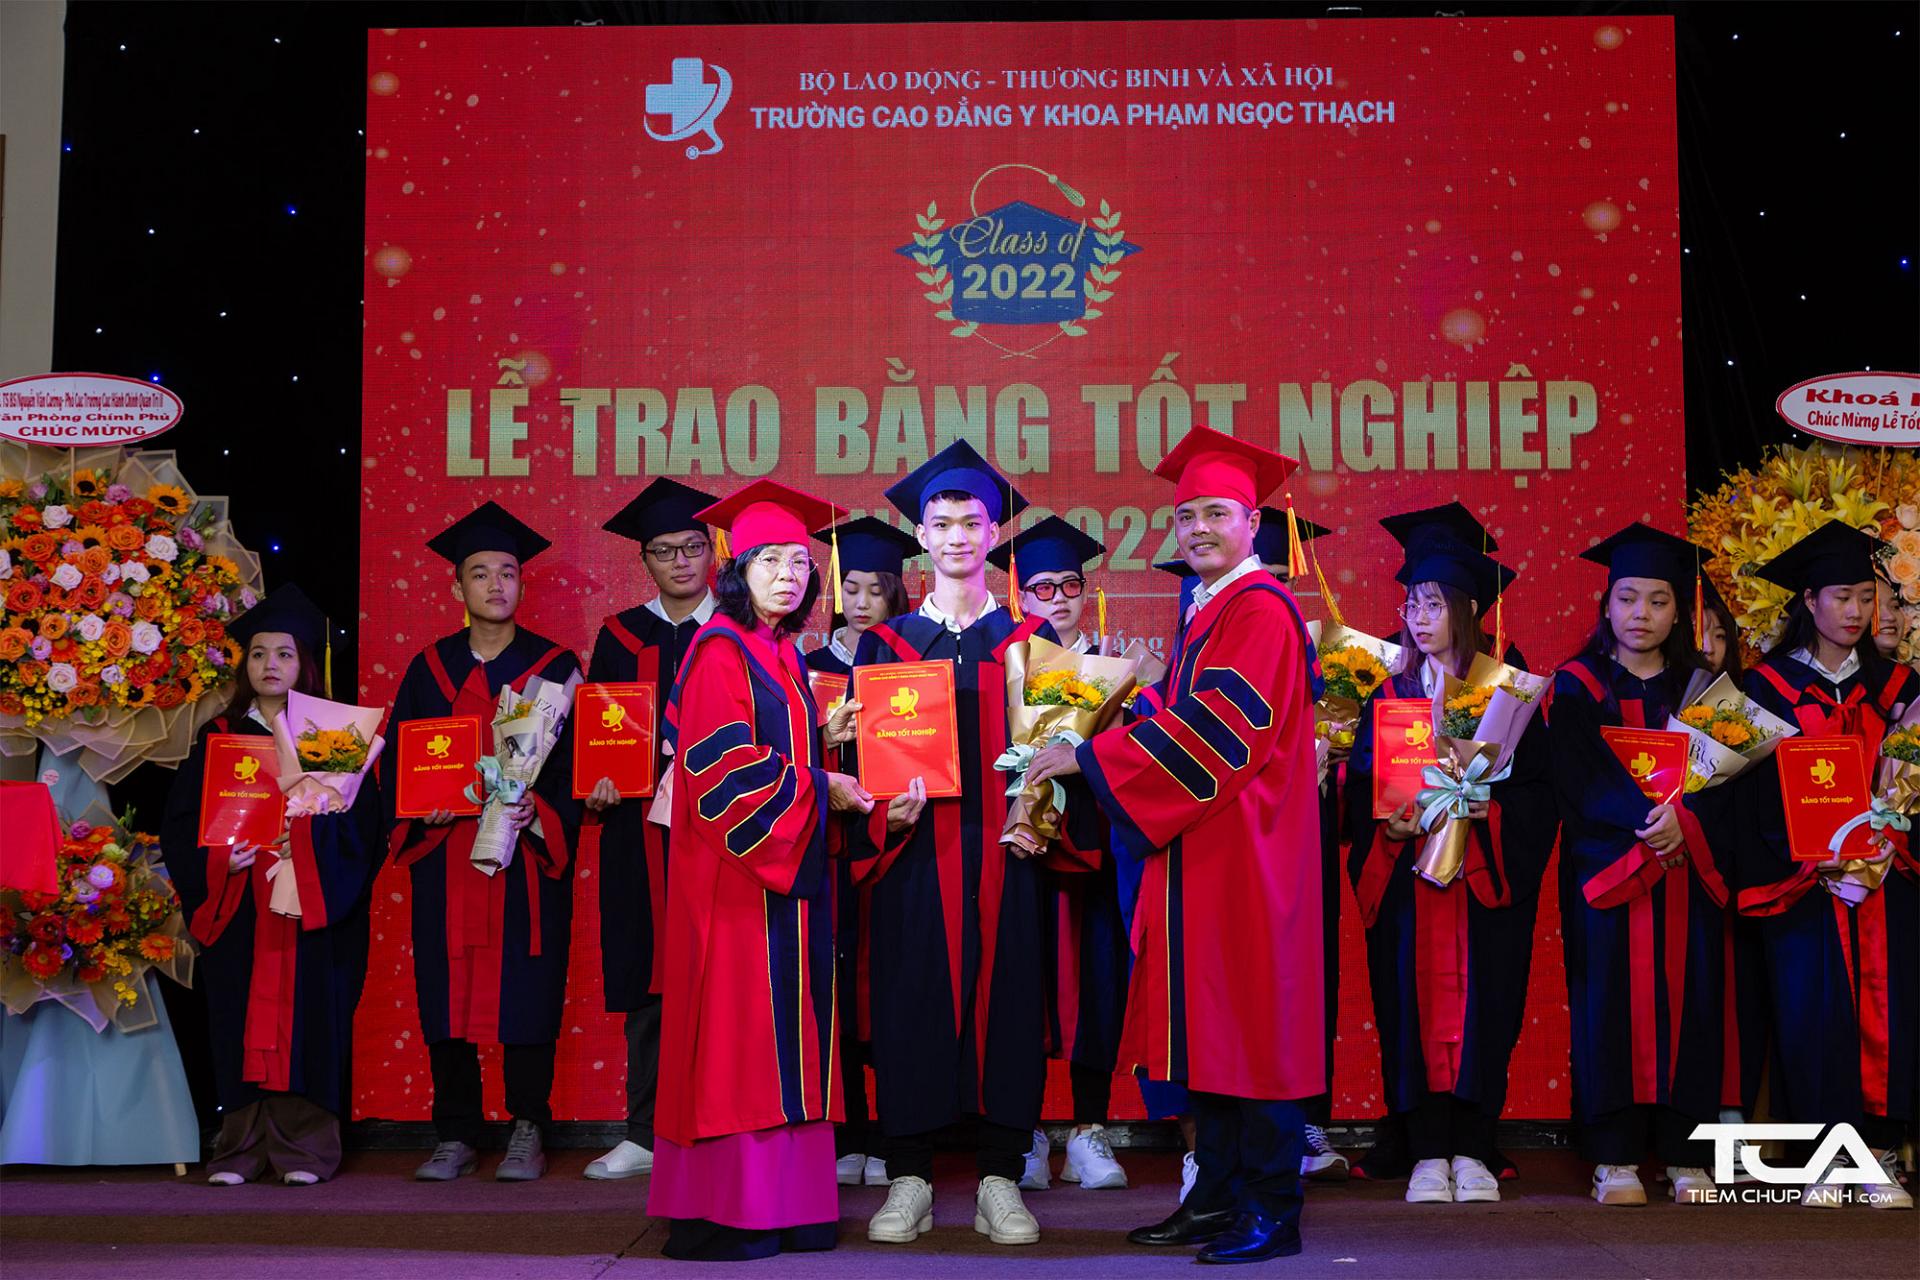 Tân cử nhân Trường Cao đẳng Y khoa Phạm Ngọc Thạch rạng rỡ nhận bằng tốt nghiệp